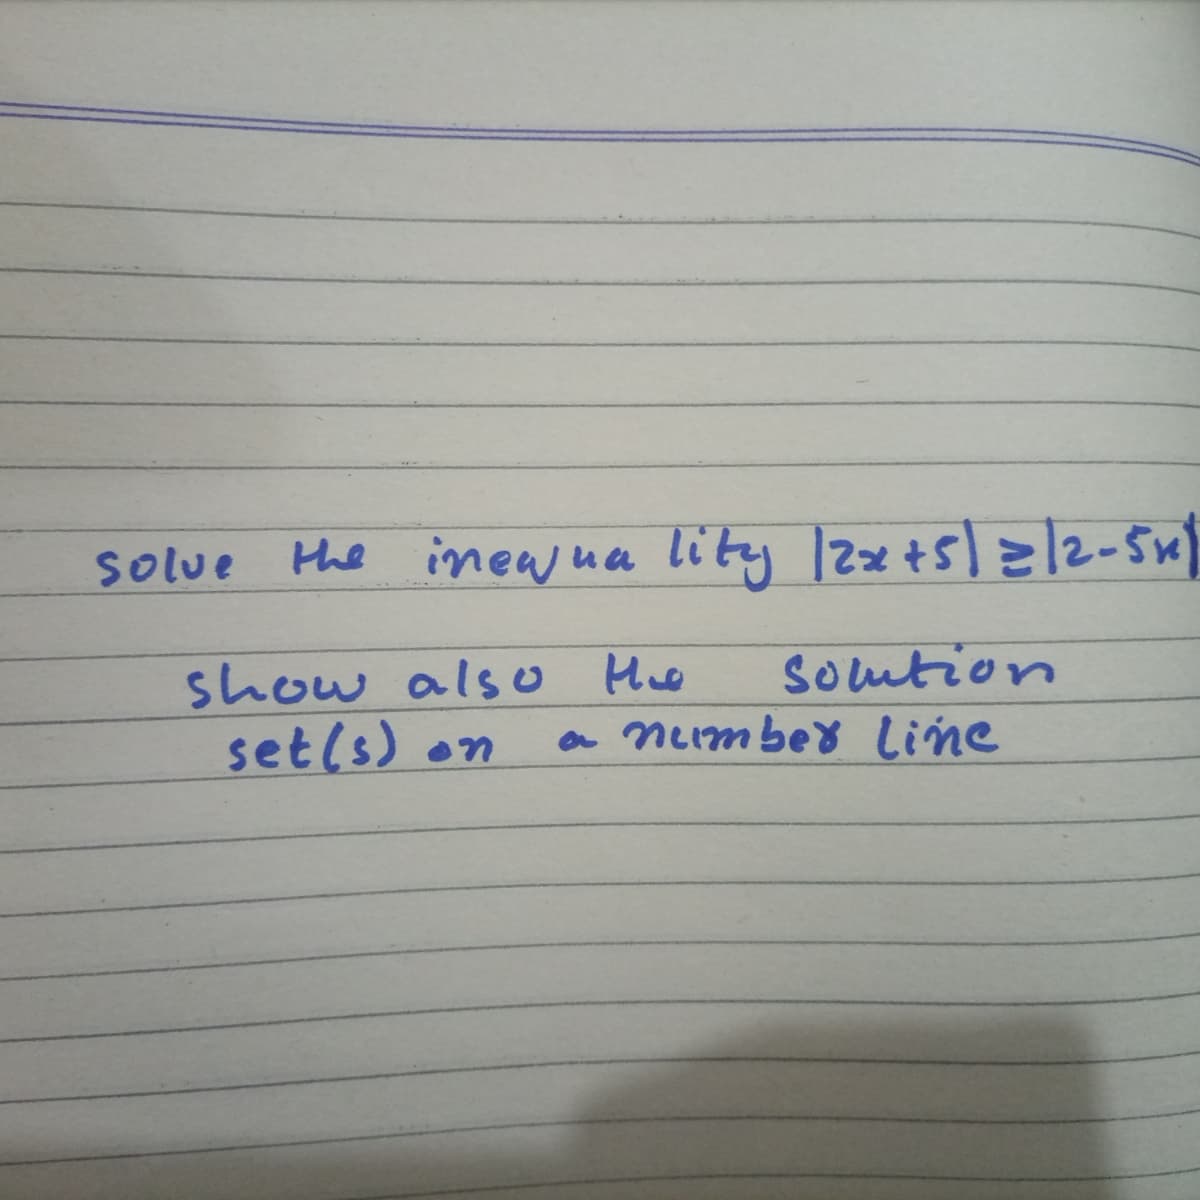 Solue
the ineaj ua lity 12z+5]=/2-5Su)
show also He
setls)
Soution
a ncimbed line
